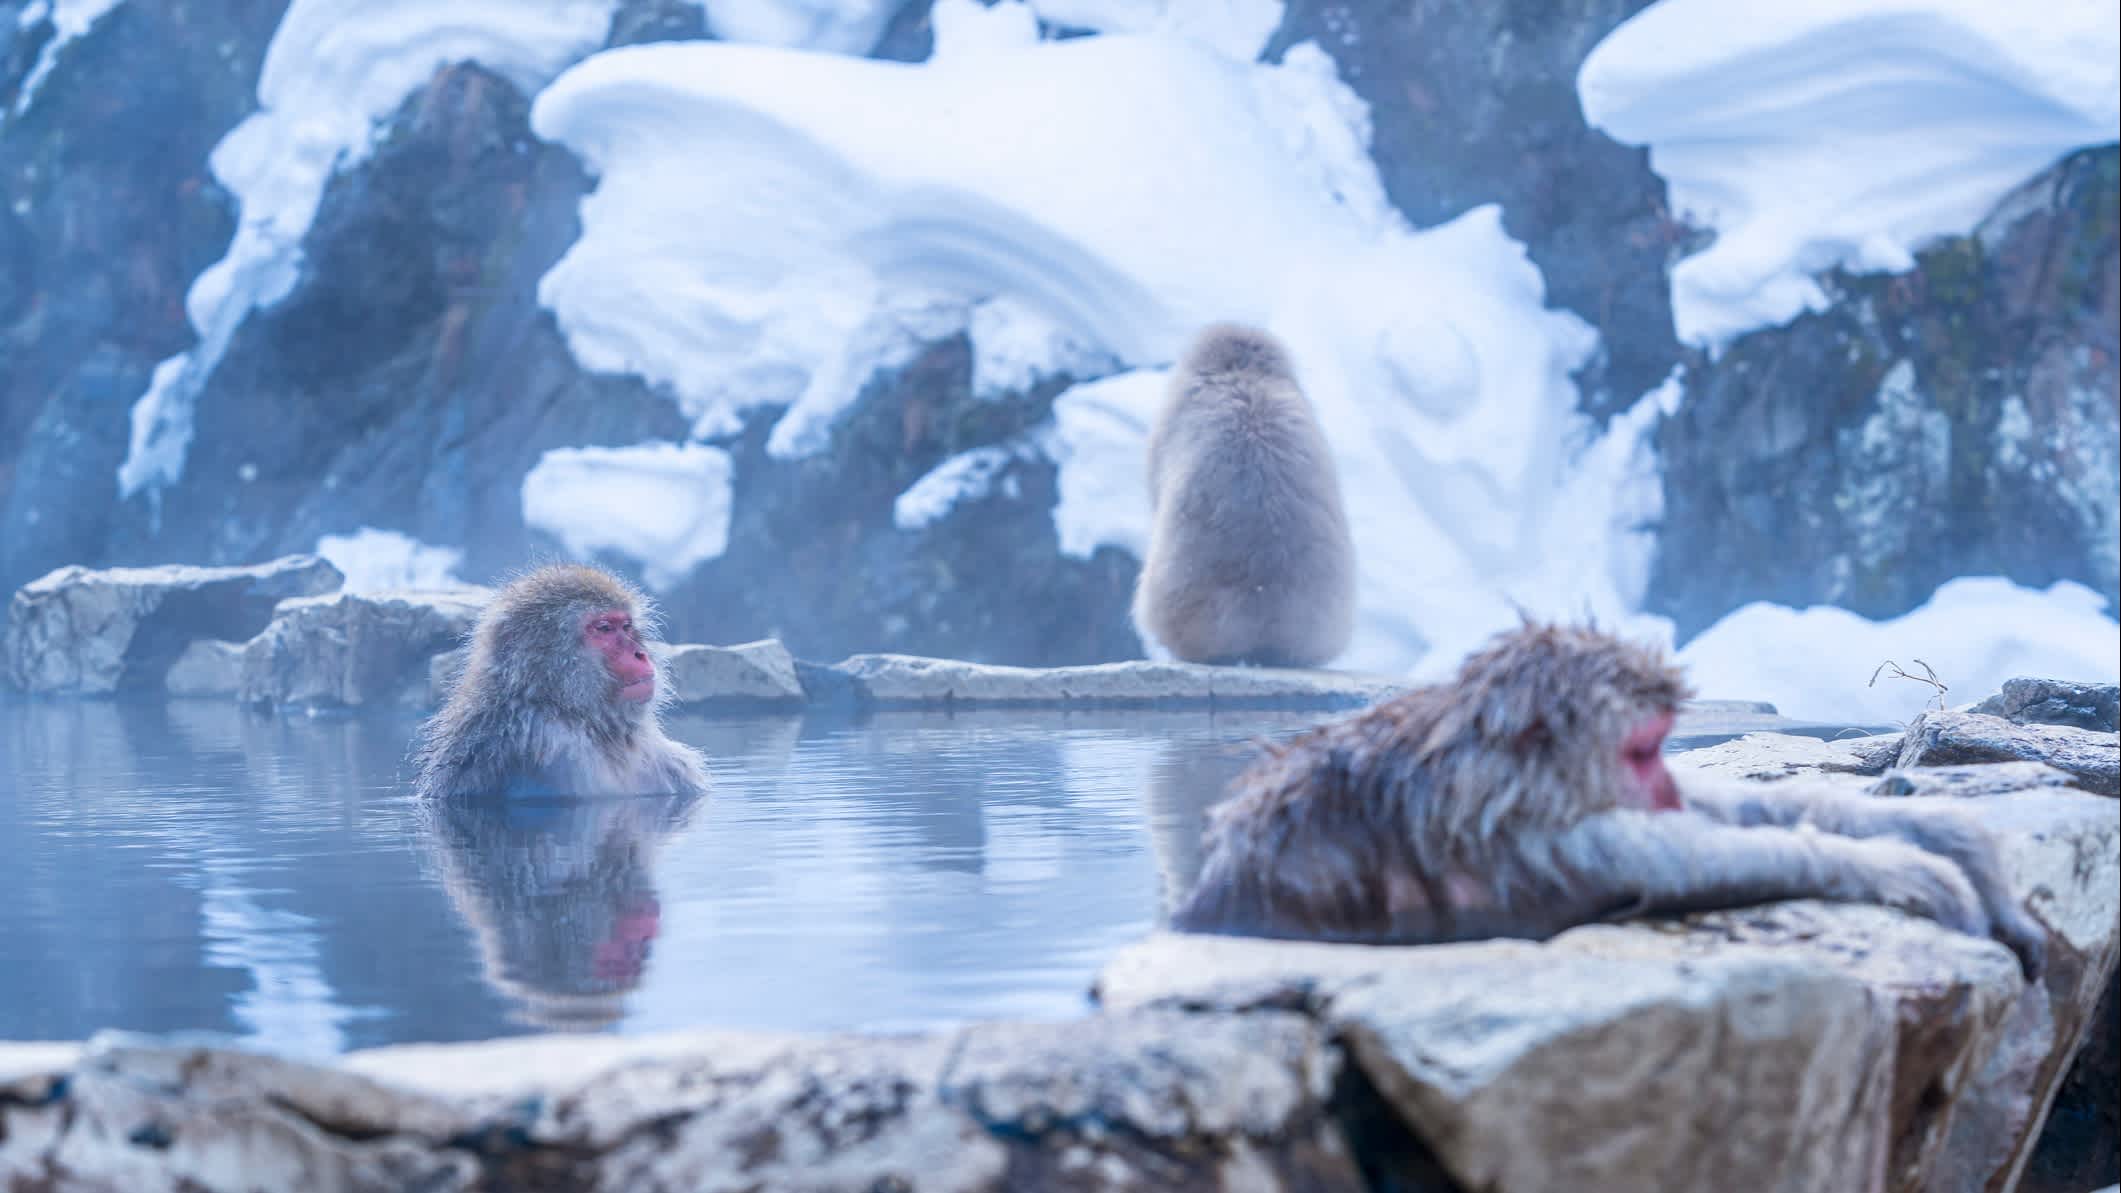 Affen in heißer Quelle im Schnee